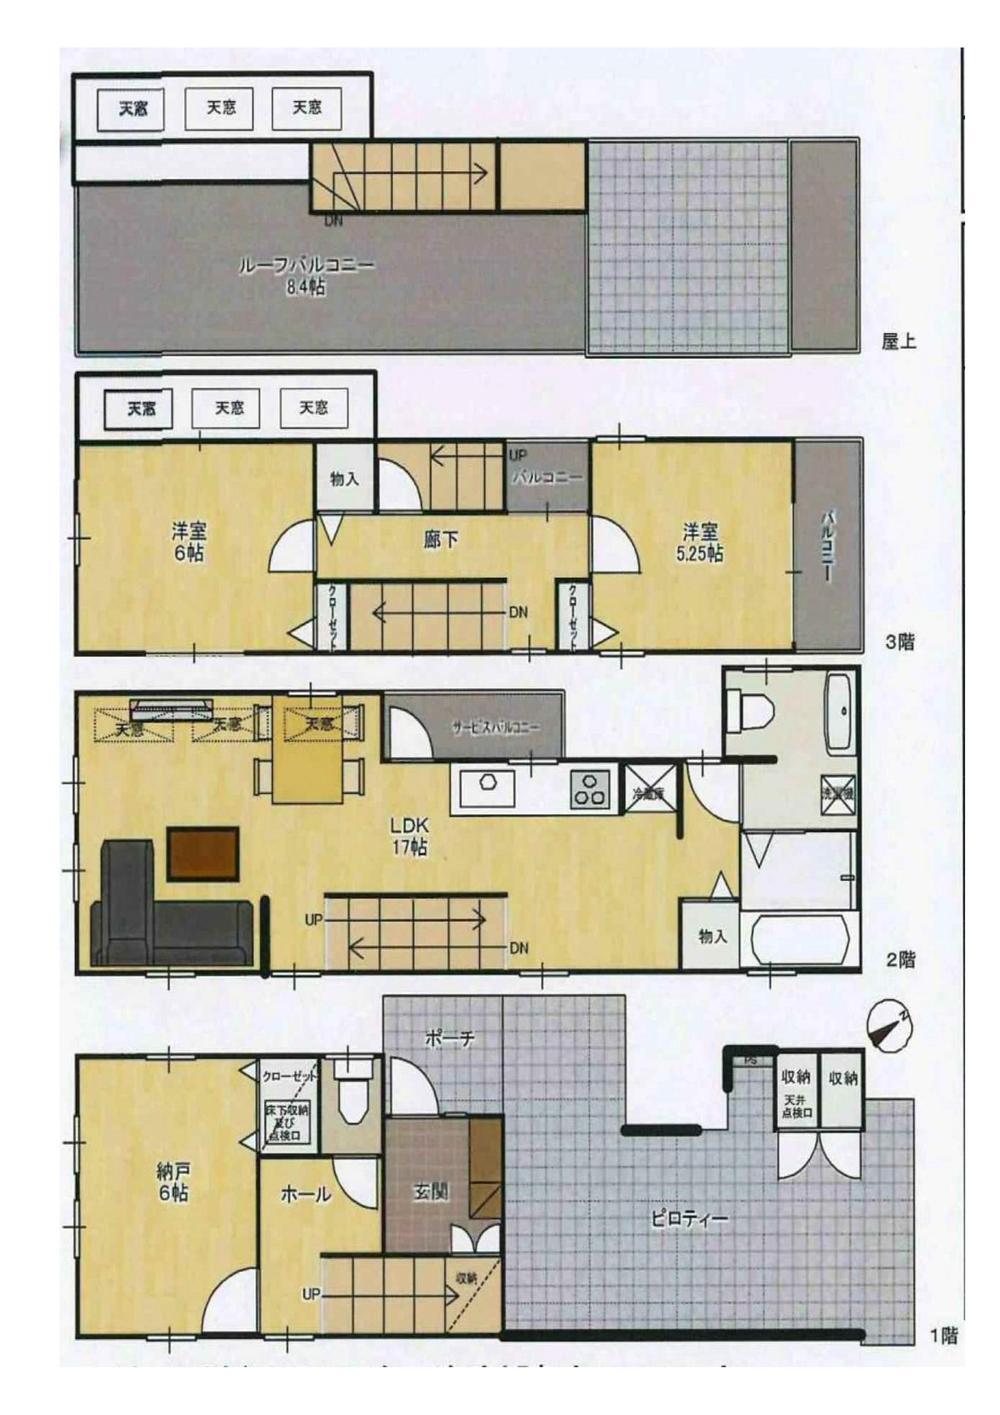 Floor plan. 75,500,000 yen, 2LDK + S (storeroom), Land area 64.72 sq m , Building area 88.48 sq m